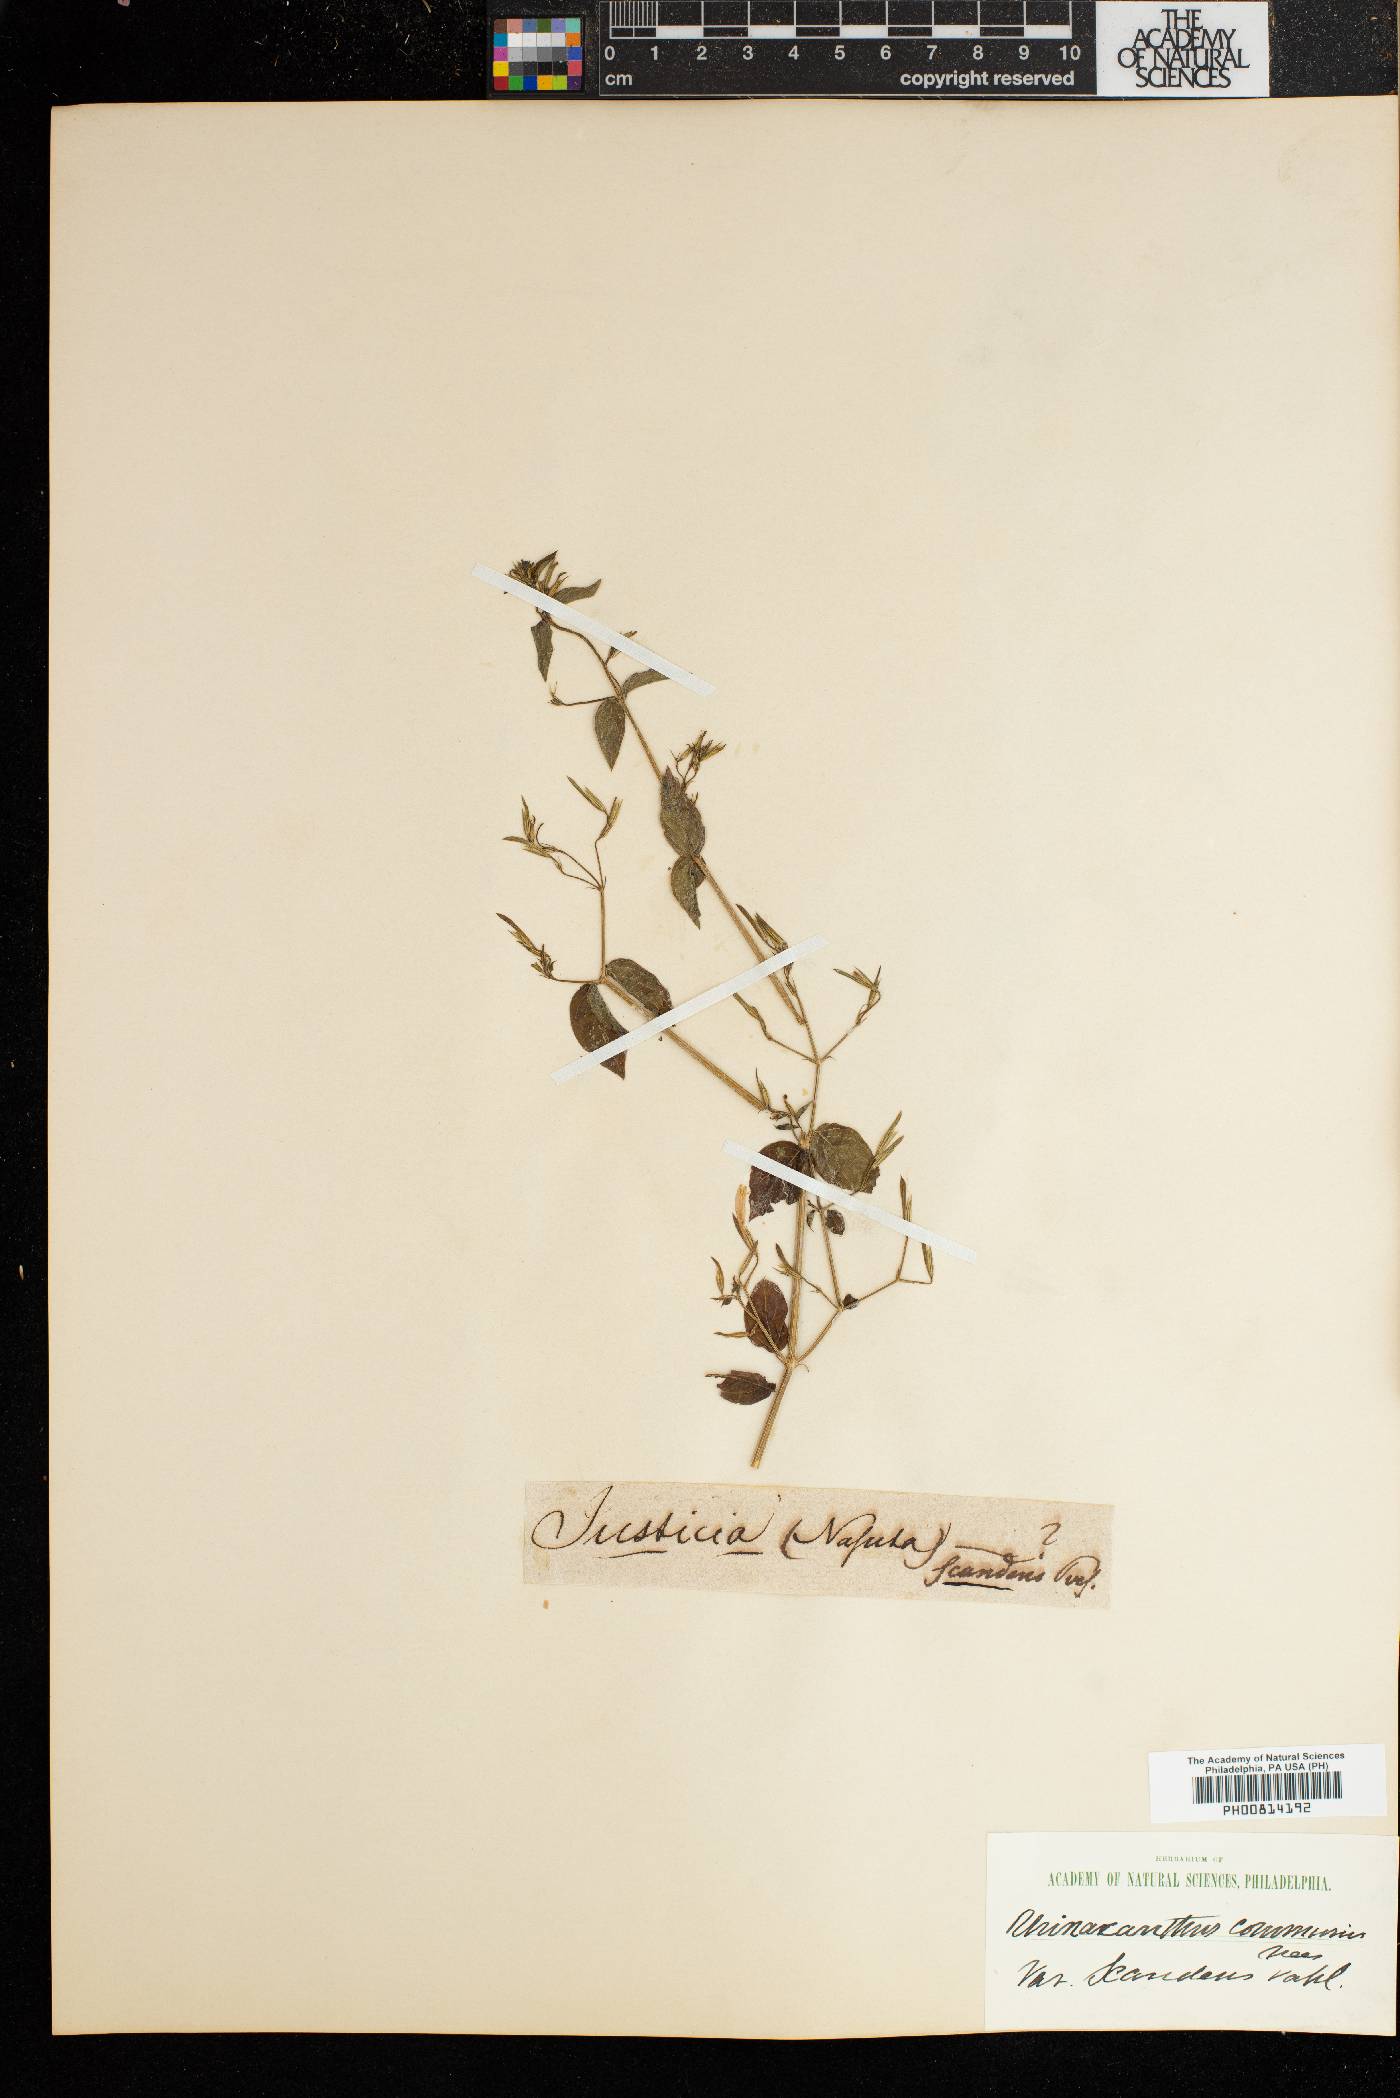 Rhinacanthus image